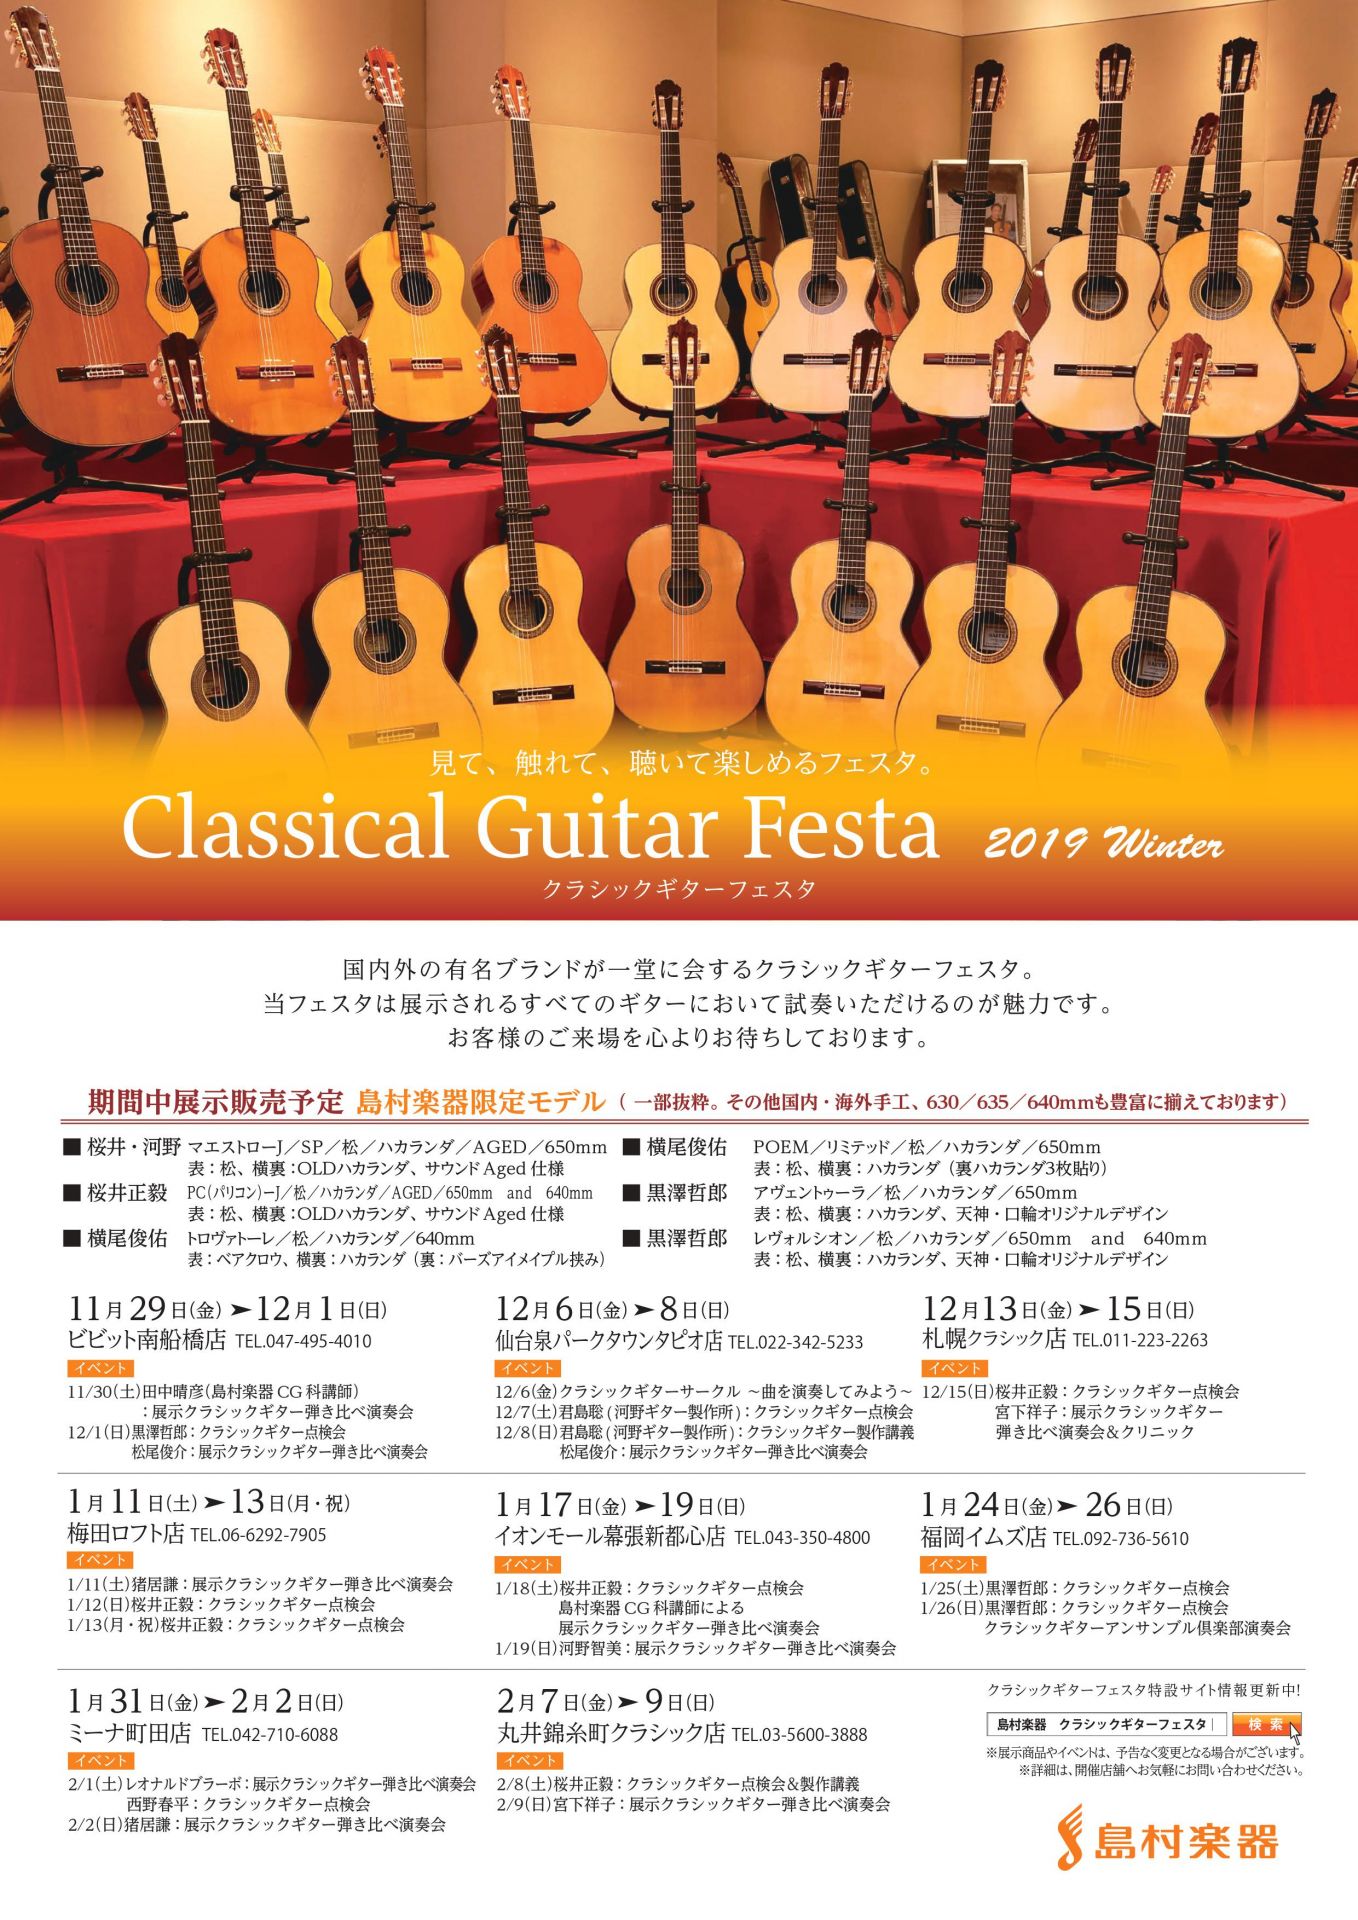 *「クラシックギターフェスタ 2019Winter」開催します。 2019/12/06(金)〜12/08(日)の3日間でクラシックギターフェスタ開催しております。 開催中ではありますが、到着のギターや開催イベントのご案内をさせていただきます。 **「クラシックギターフェスタ」とは？ 国内外の有名ブラ […]